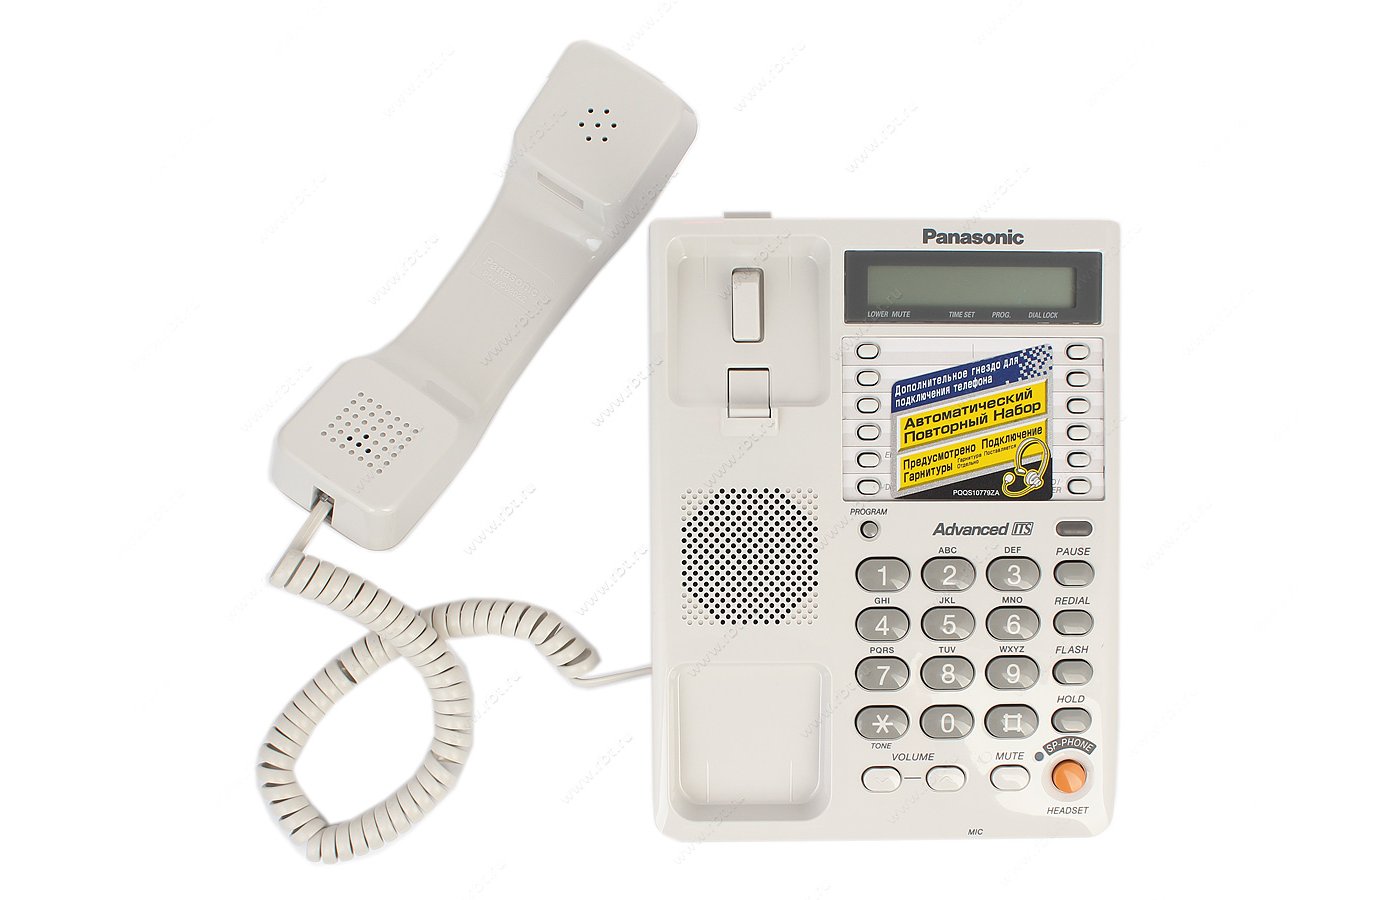 Телефон panasonic kx ts2365ruw. Телефонный аппарат Panasonic KX-ts2365ruw. Проводной телефон Панасоник KX-ts2365ruw. KX-ts2365ruw. Panasonic Advanced its KX-ts2365ruw.